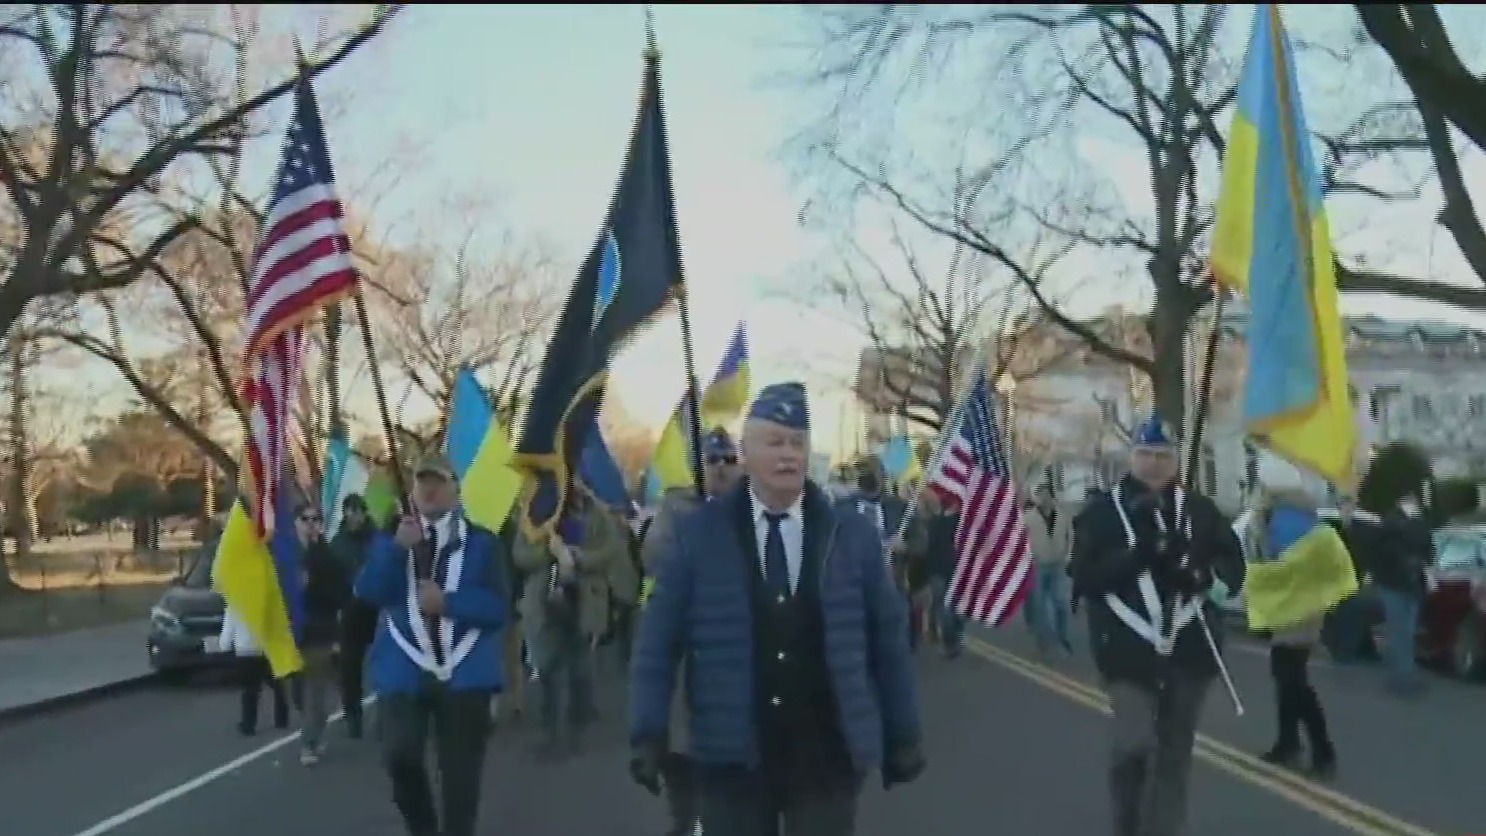 marchan en eeuu a favor de ucrania por posible invasion rusa